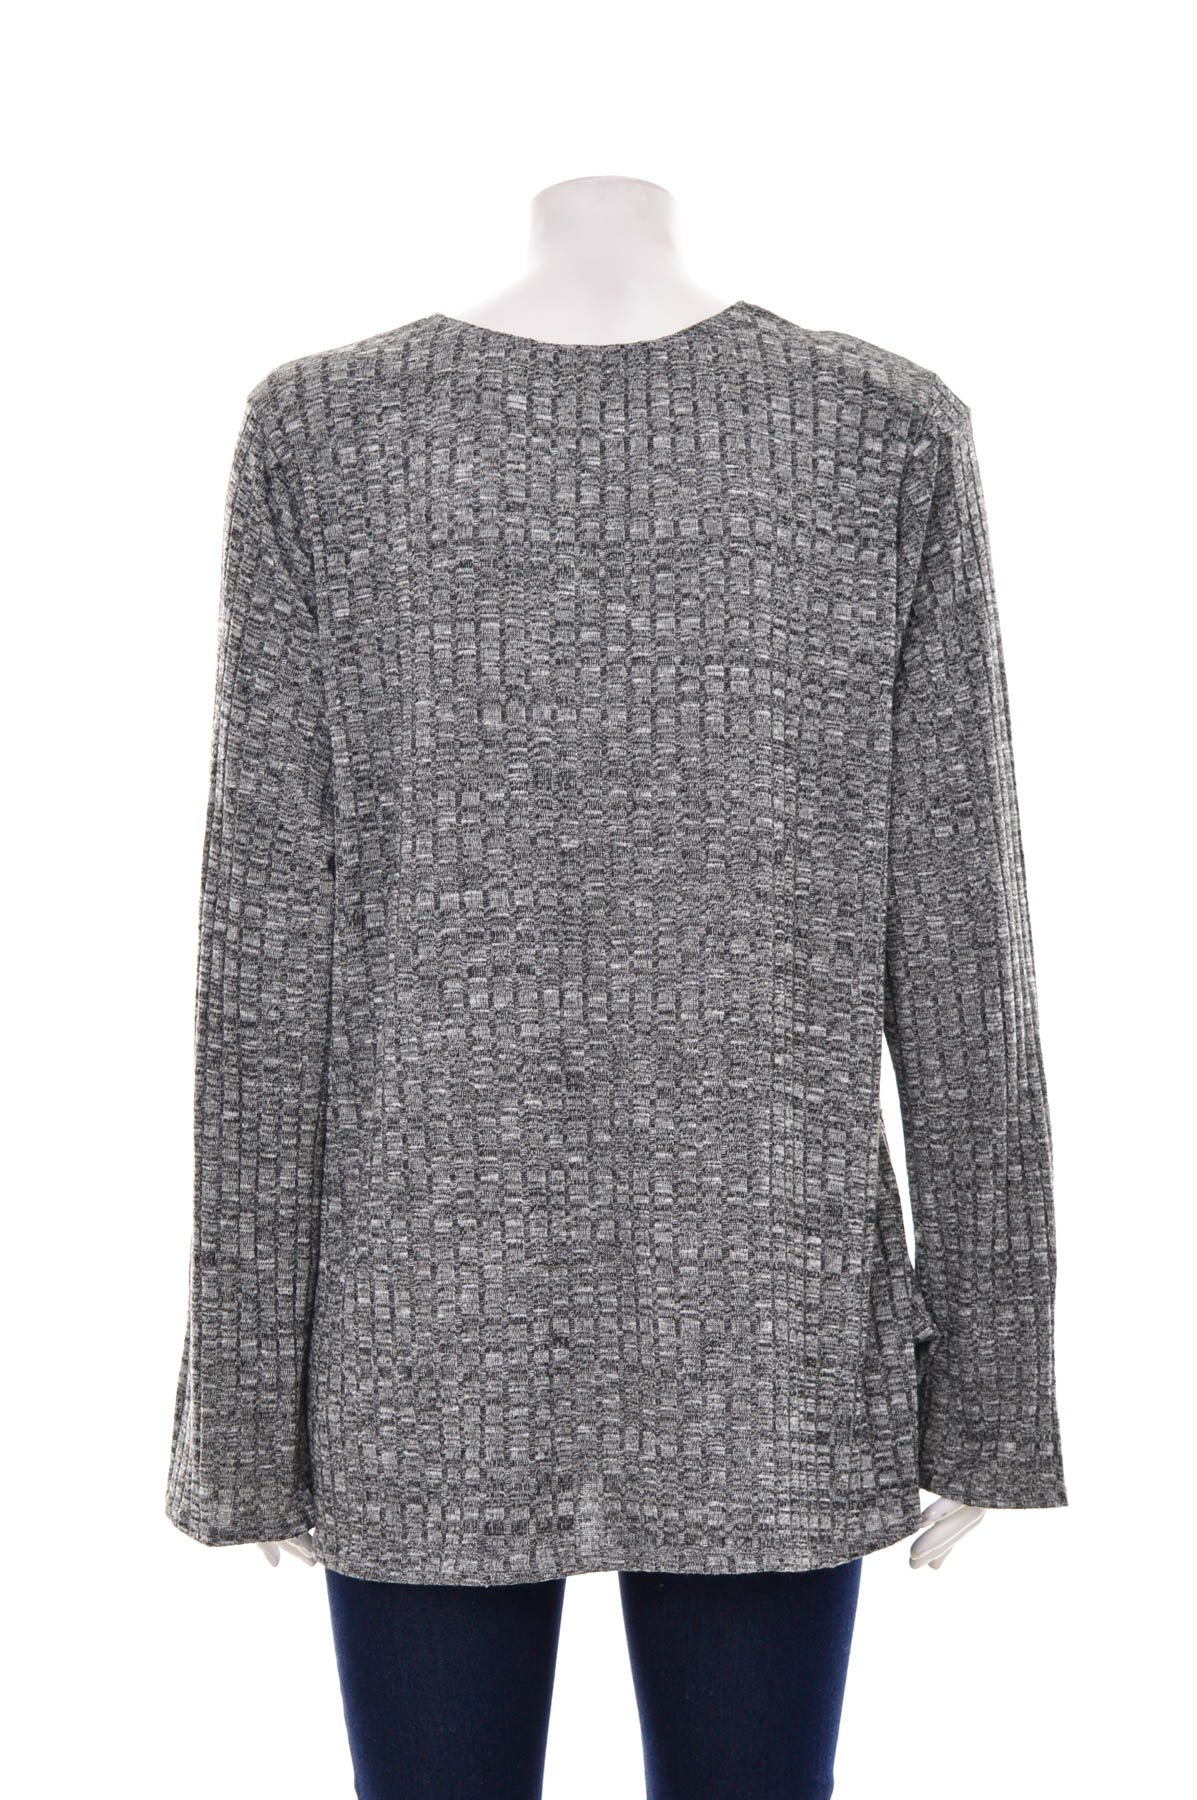 Women's sweater - Chenault - 1